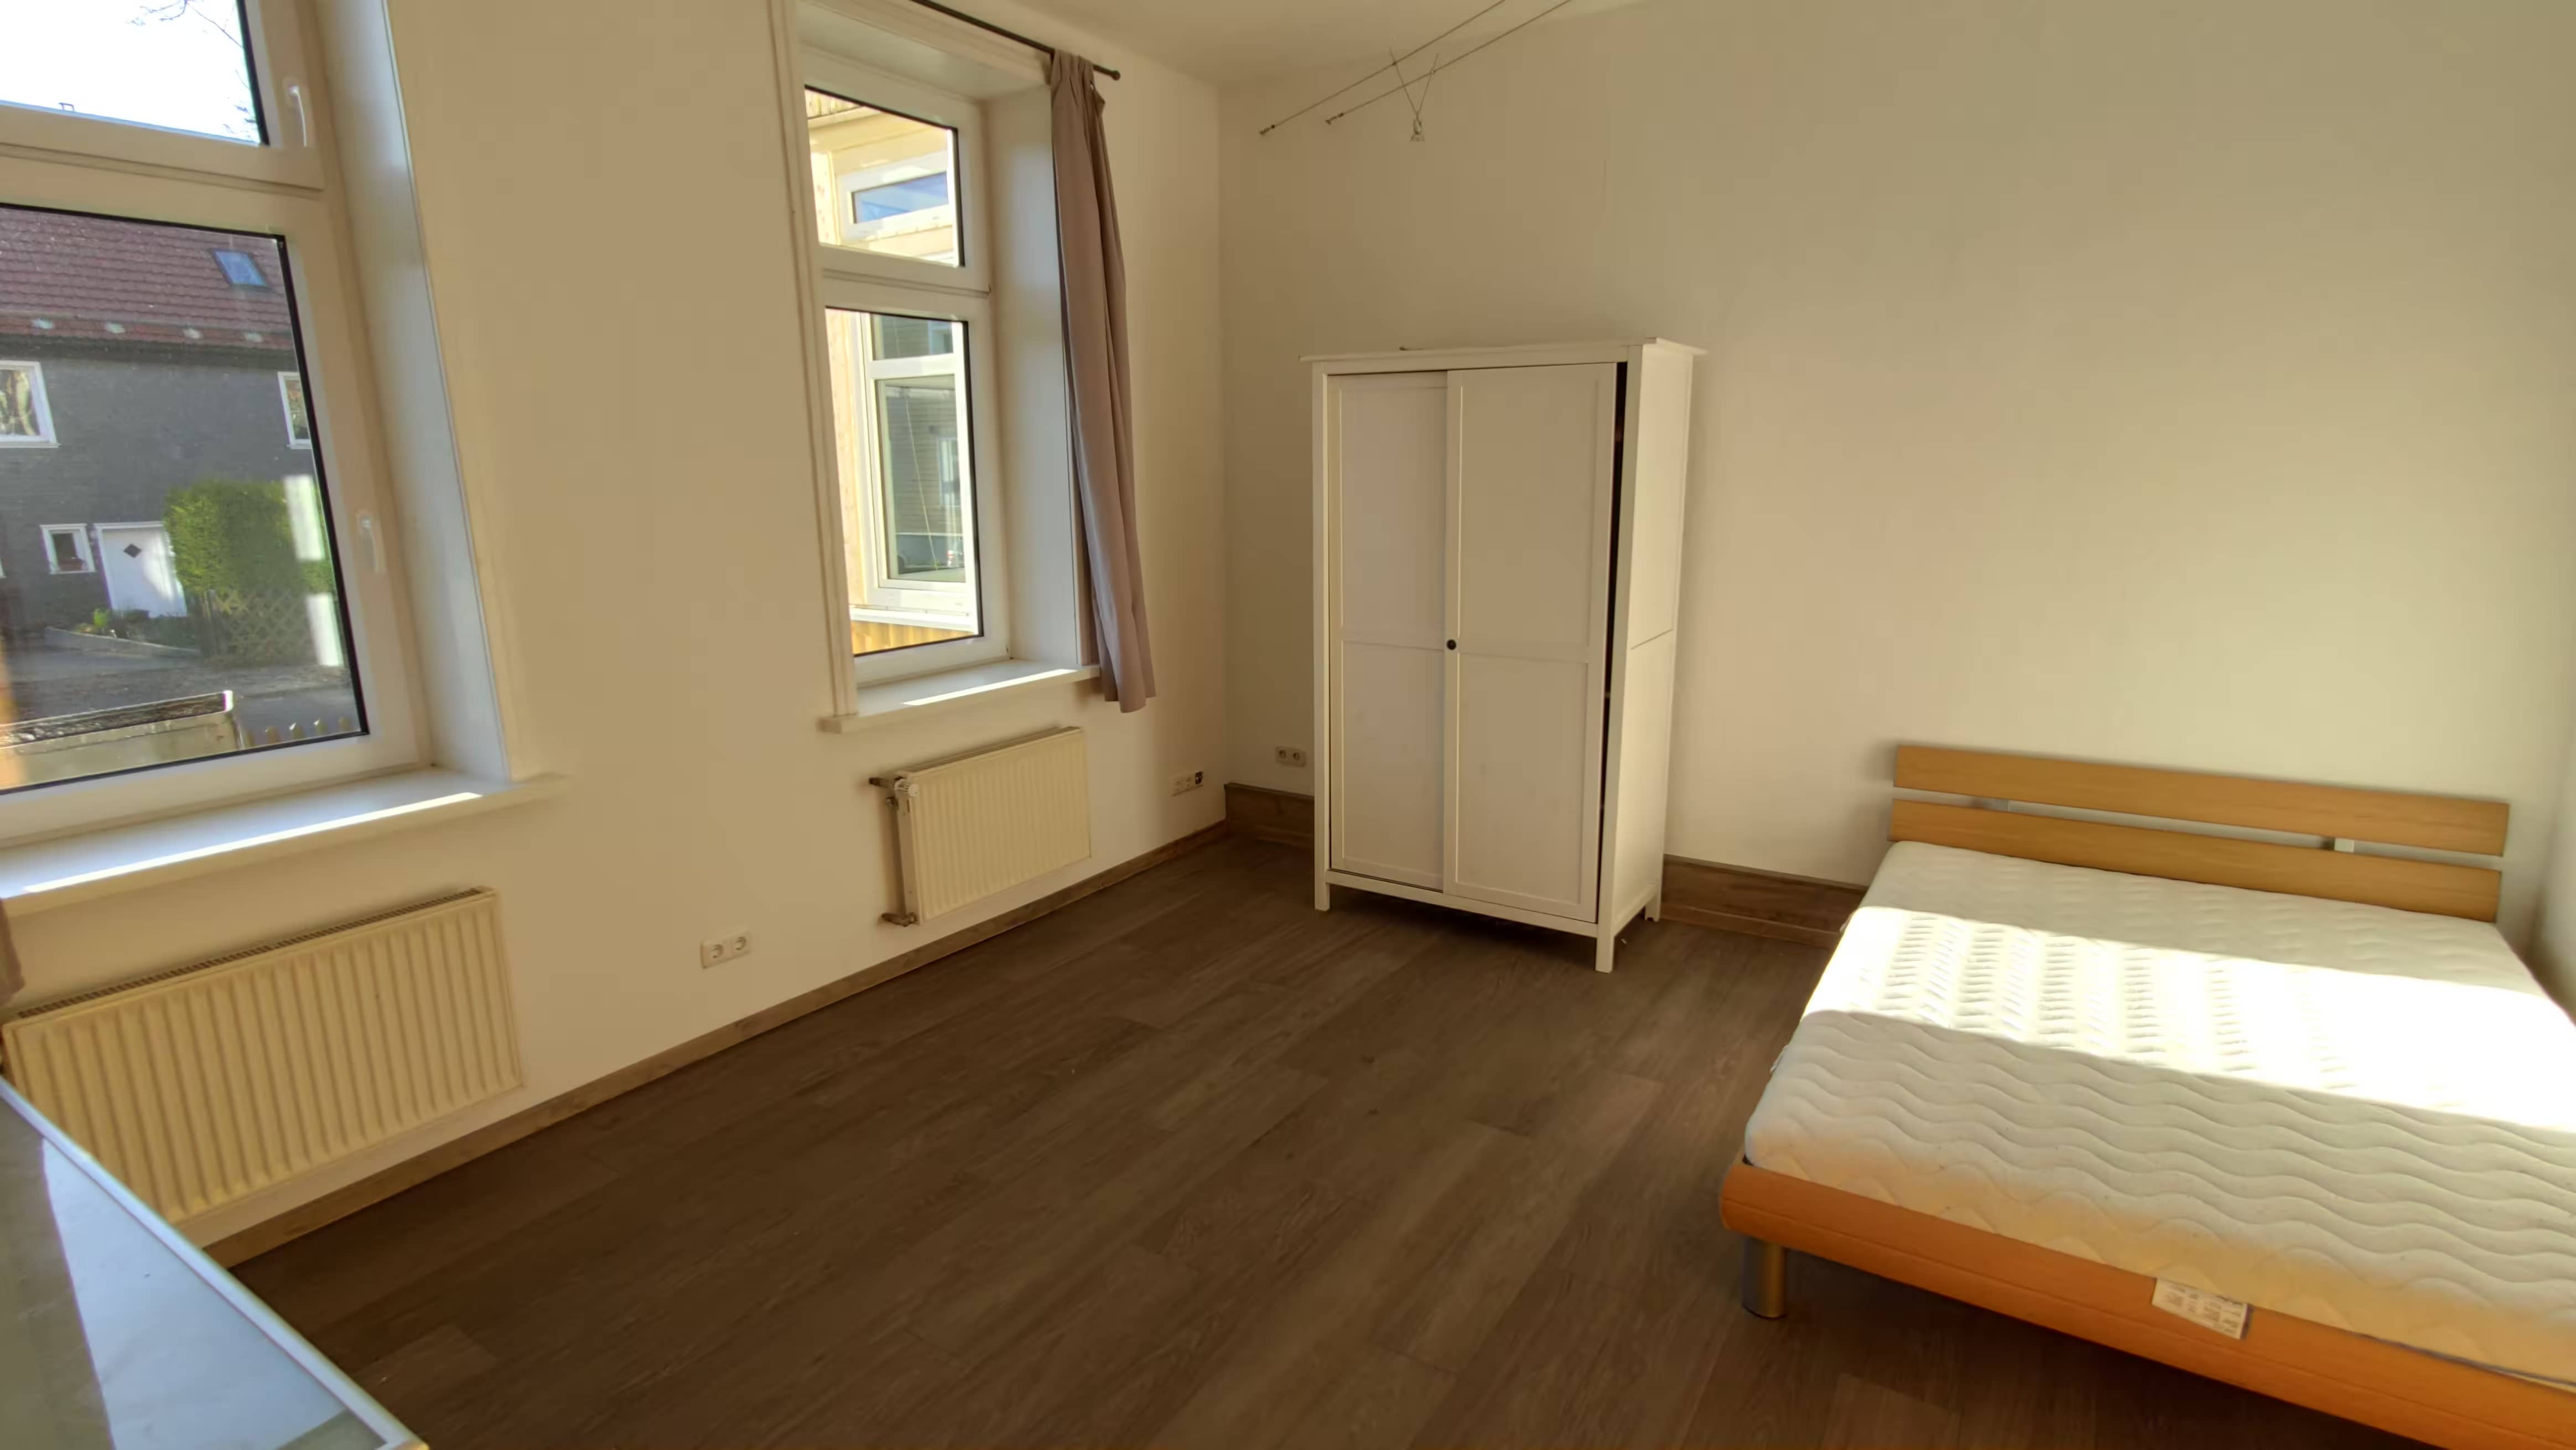 Dein neues Zimmer im Zentrum von Clausthal!